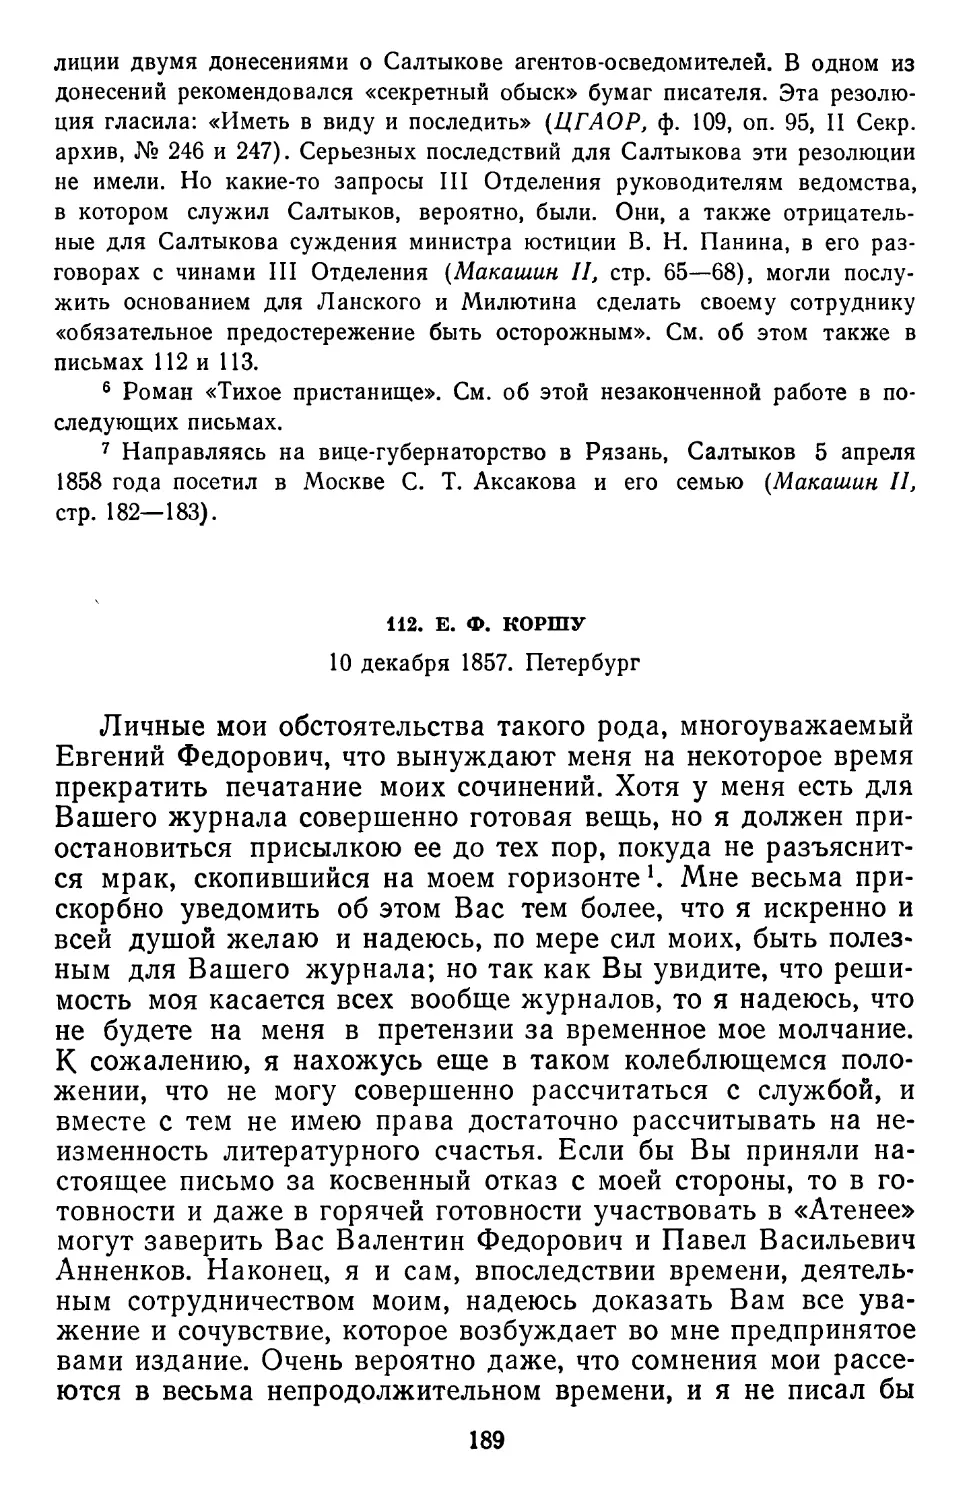 112.Е.Ф. Коршу. 10 декабря 1857. Петербург